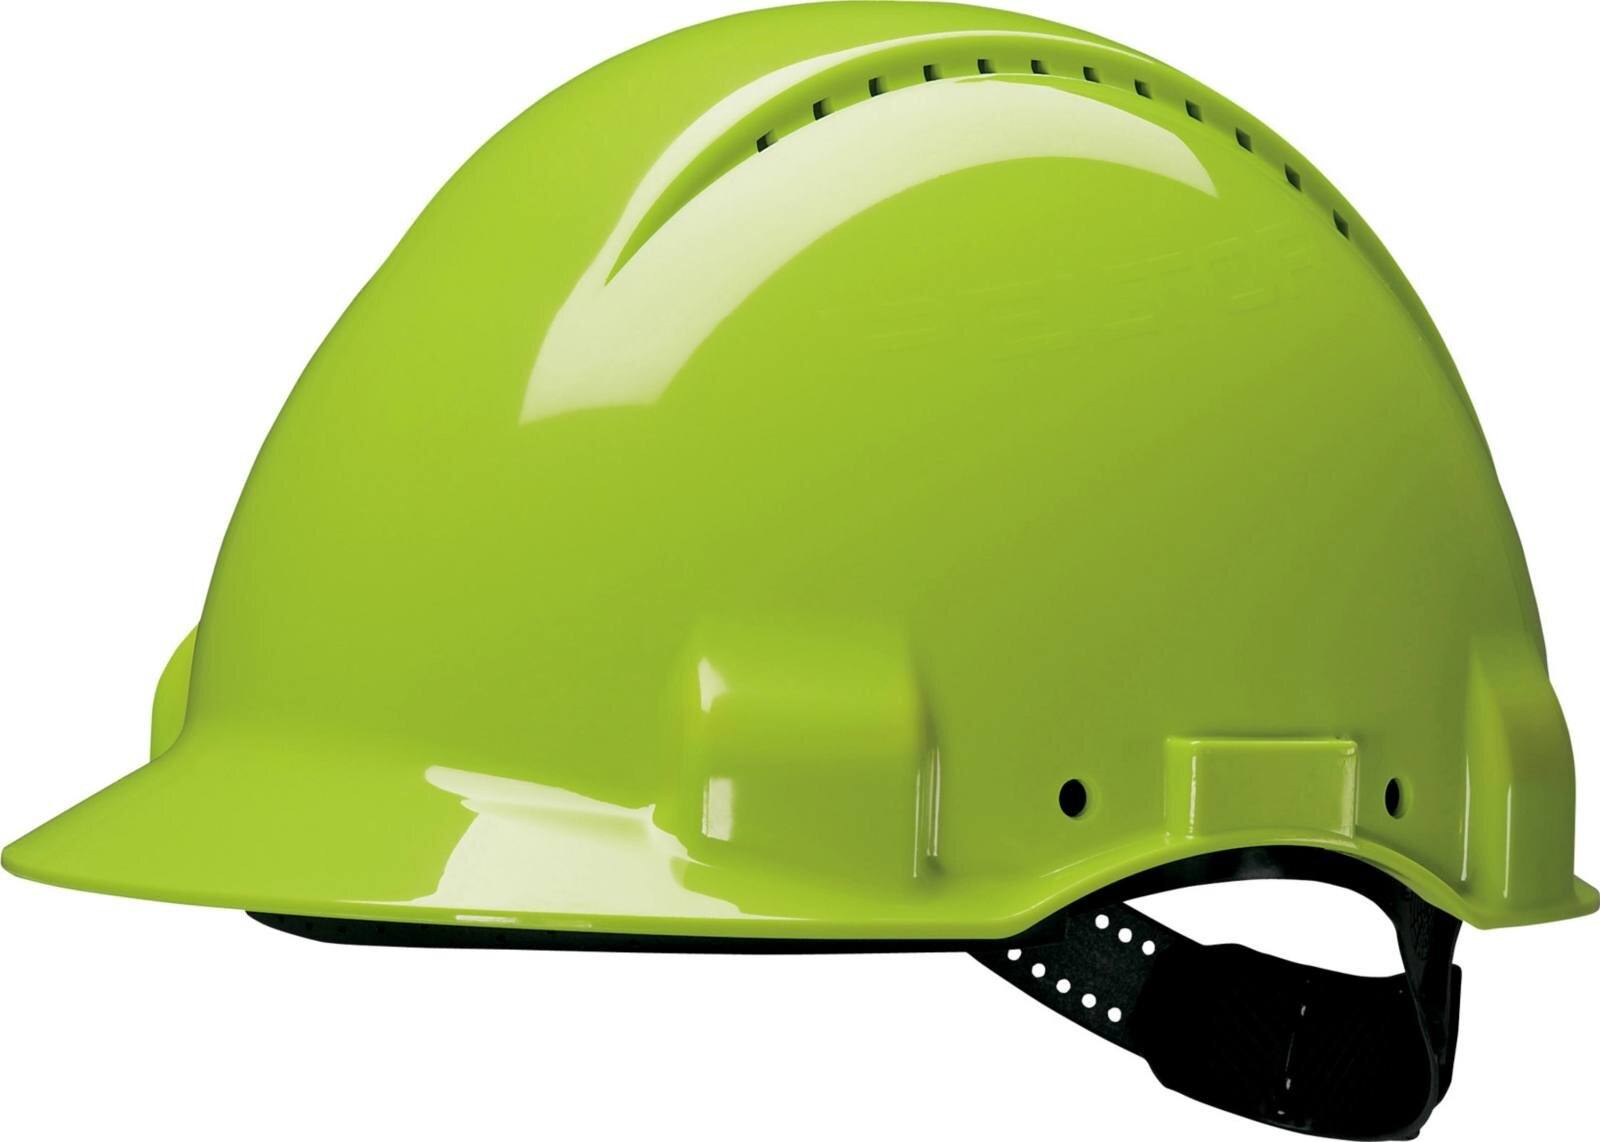 elmetto di sicurezza 3M G3000 G30DUV in verde neon, ventilato, con uvicatore, pinlock e fascia antisudore in pelle